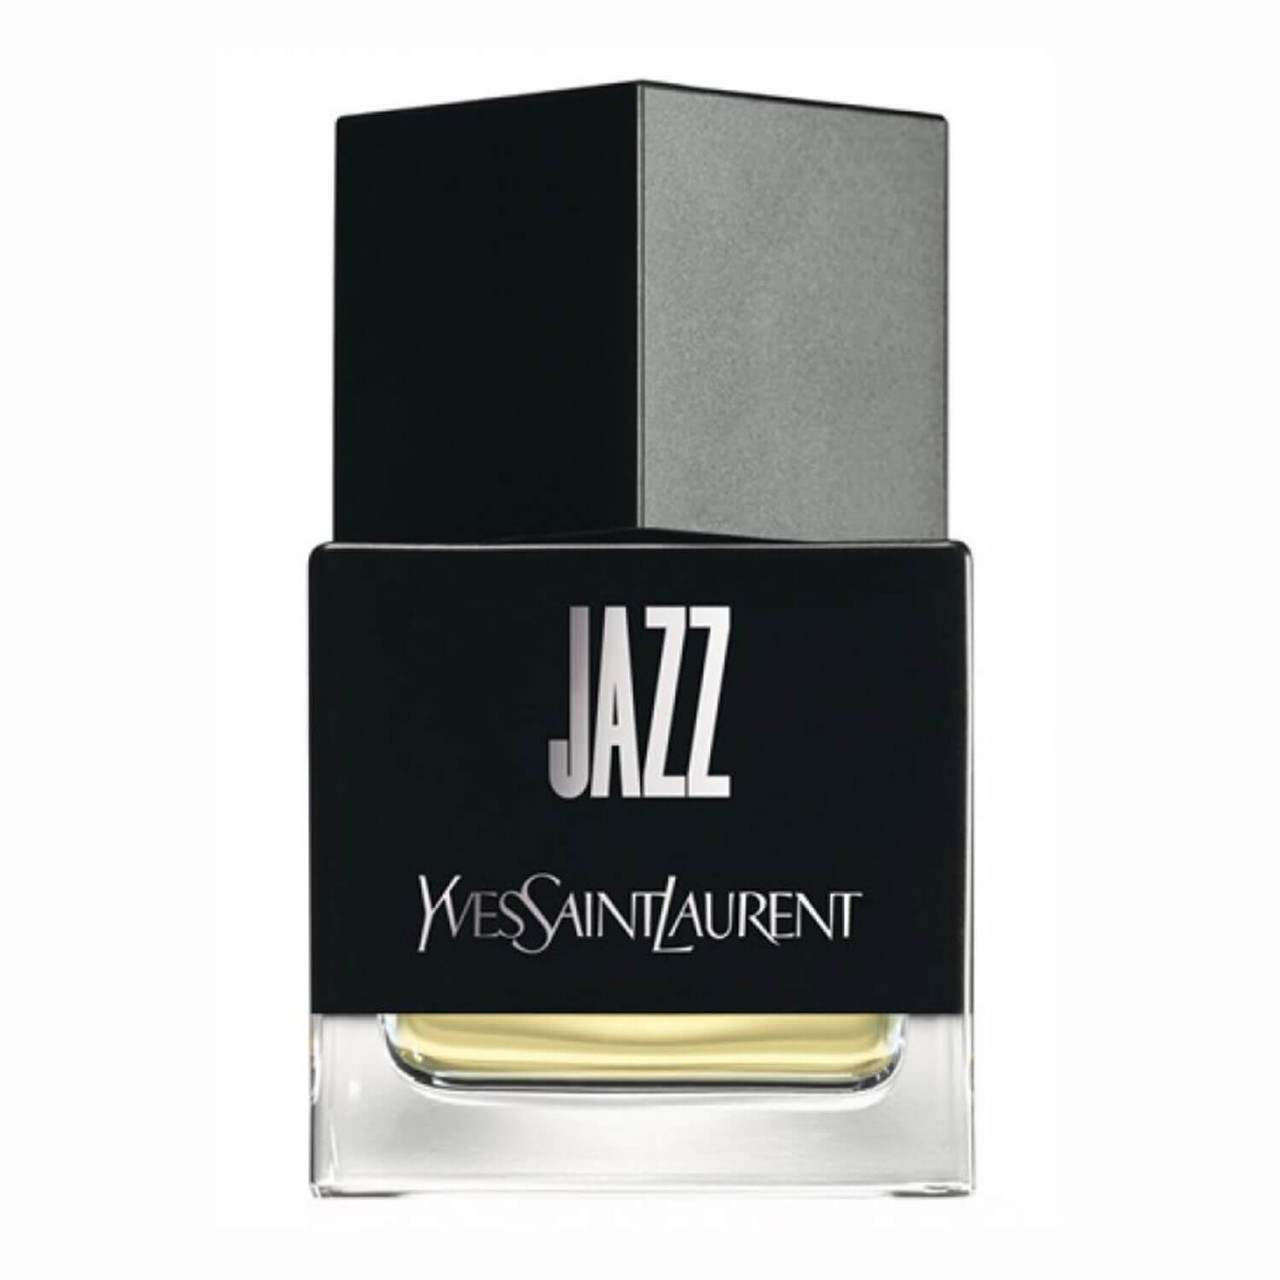 La Collection - Jazz Eau de Toilette von Yves Saint Laurent